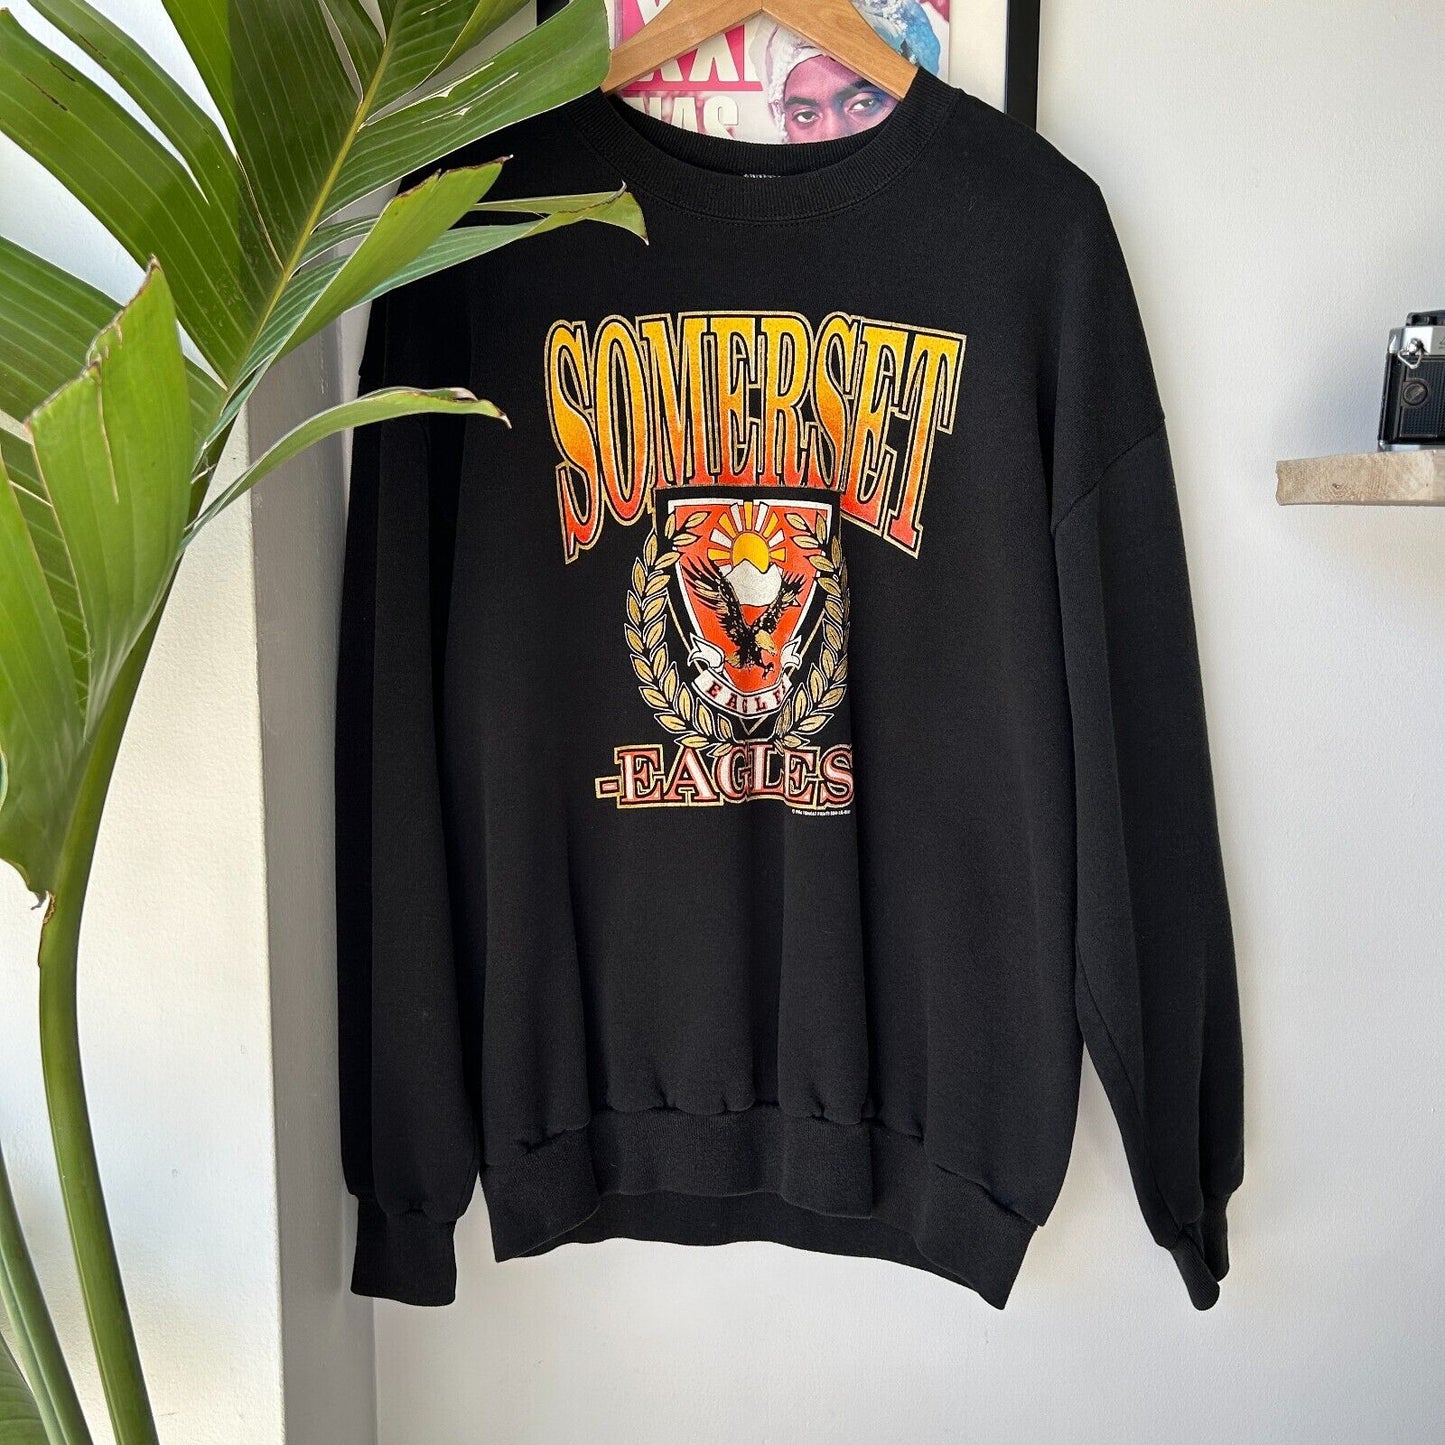 VINTAGE 1994 | Somerset Eagles Crewneck Sweater sz XL Adult